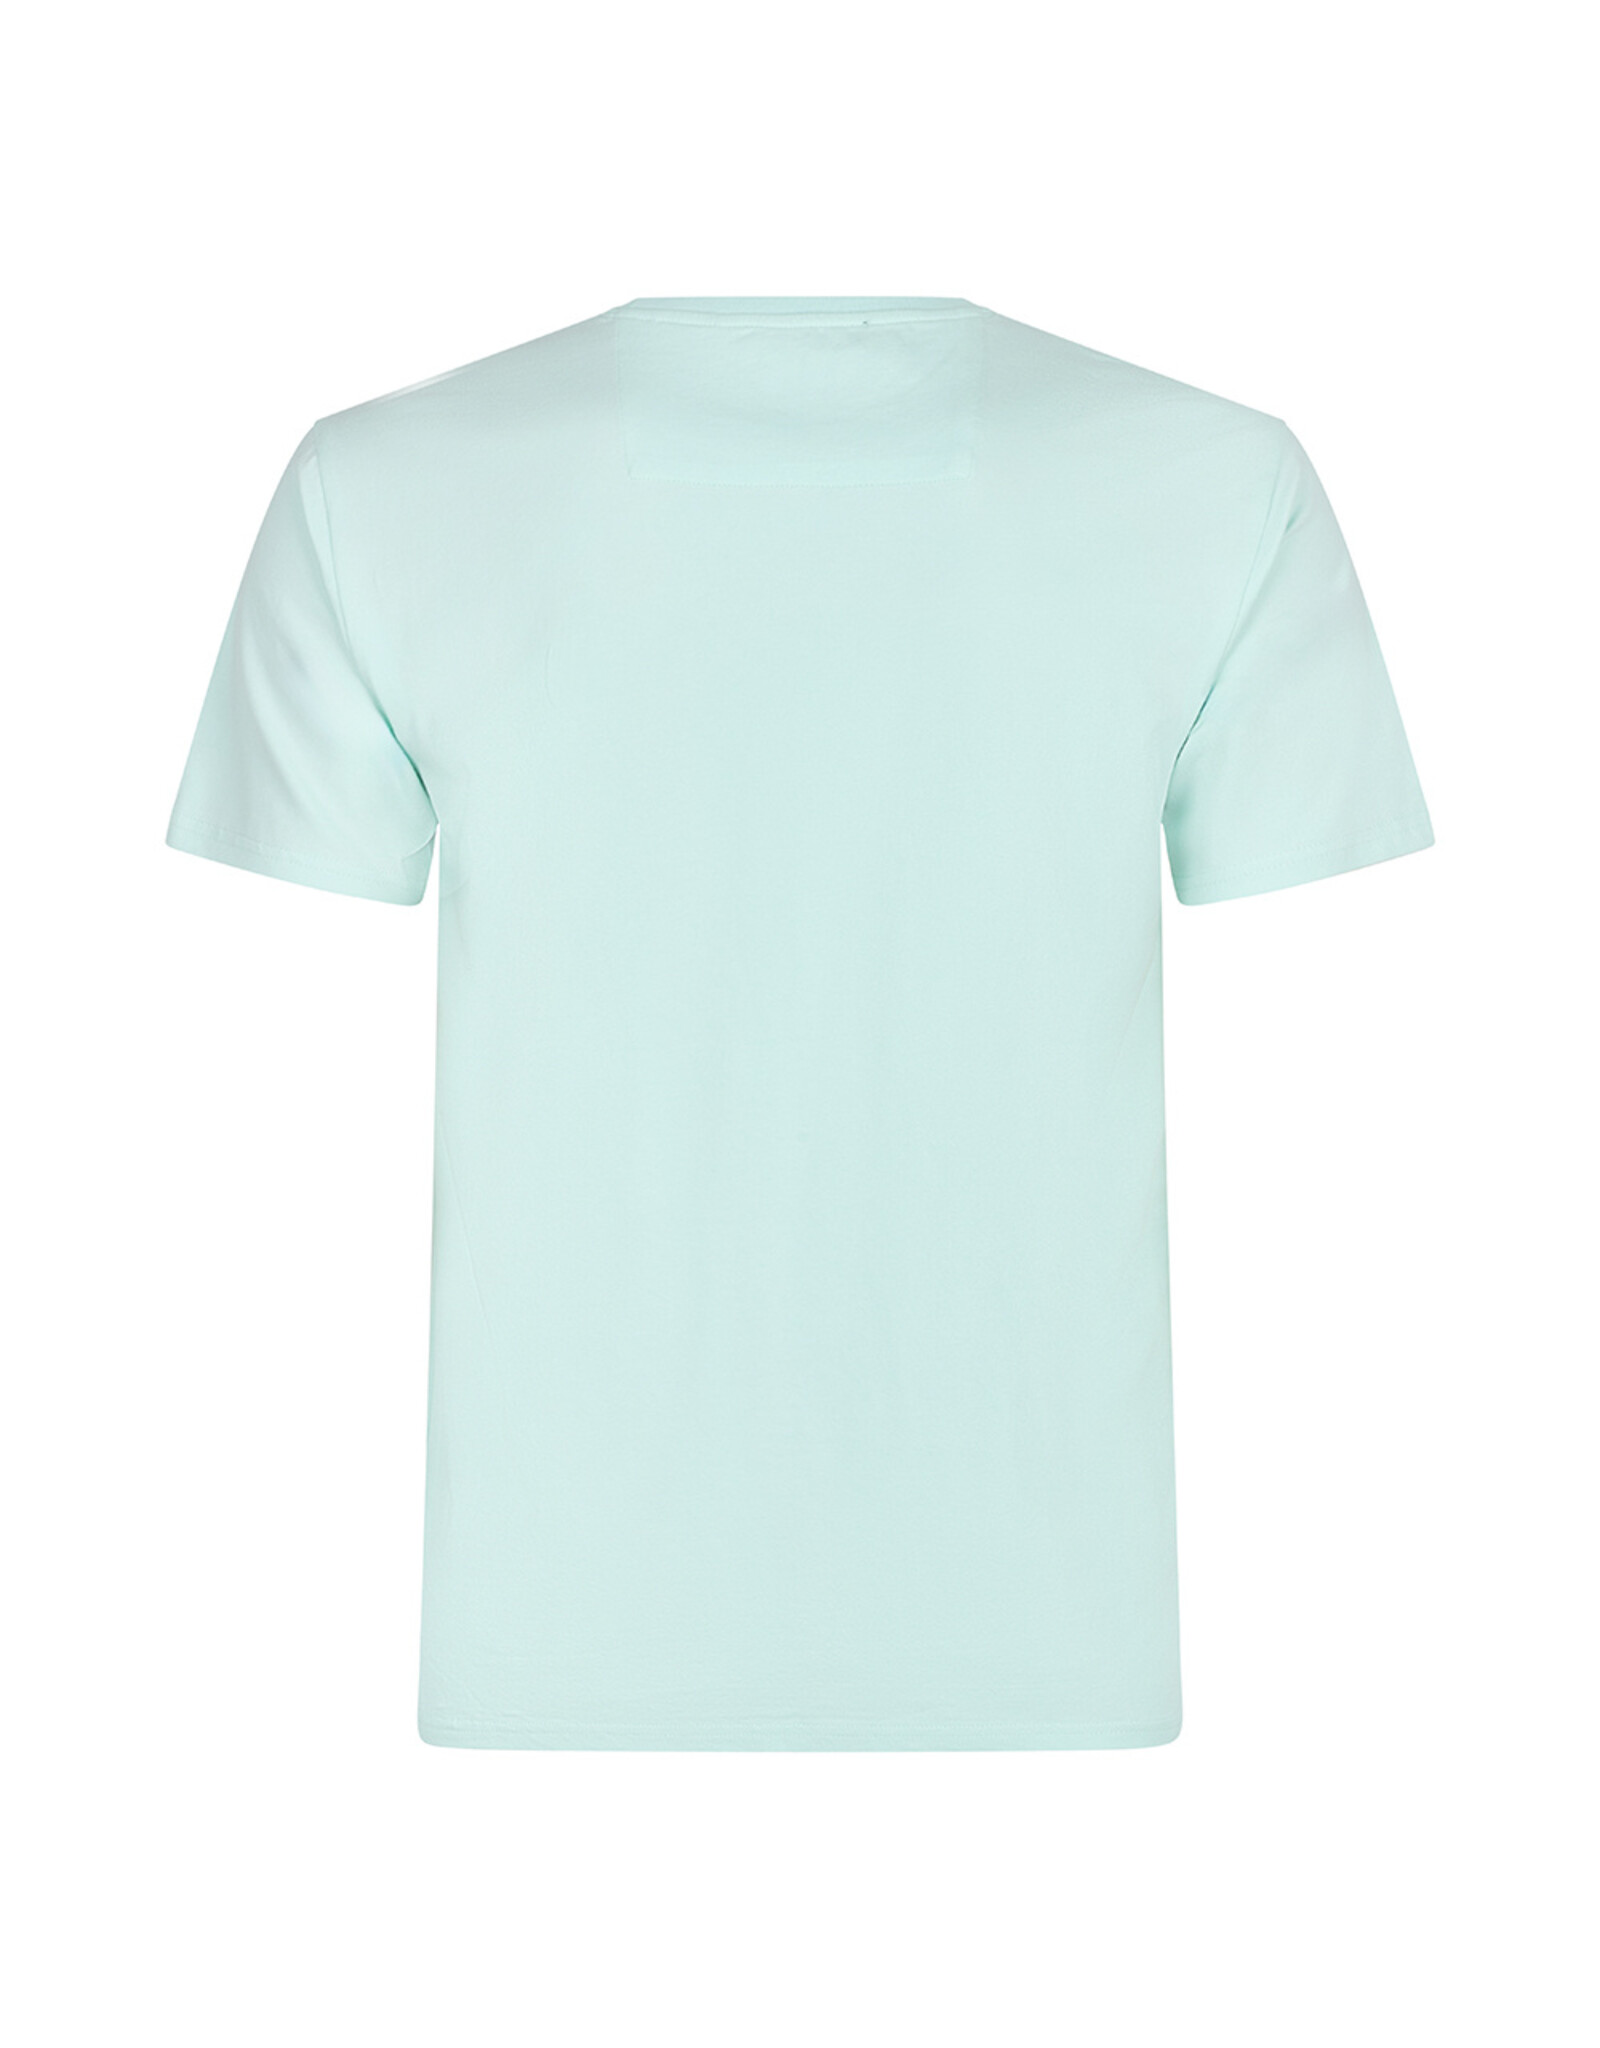 Rellix T-Shirt SS Basic Fresh Mint-622